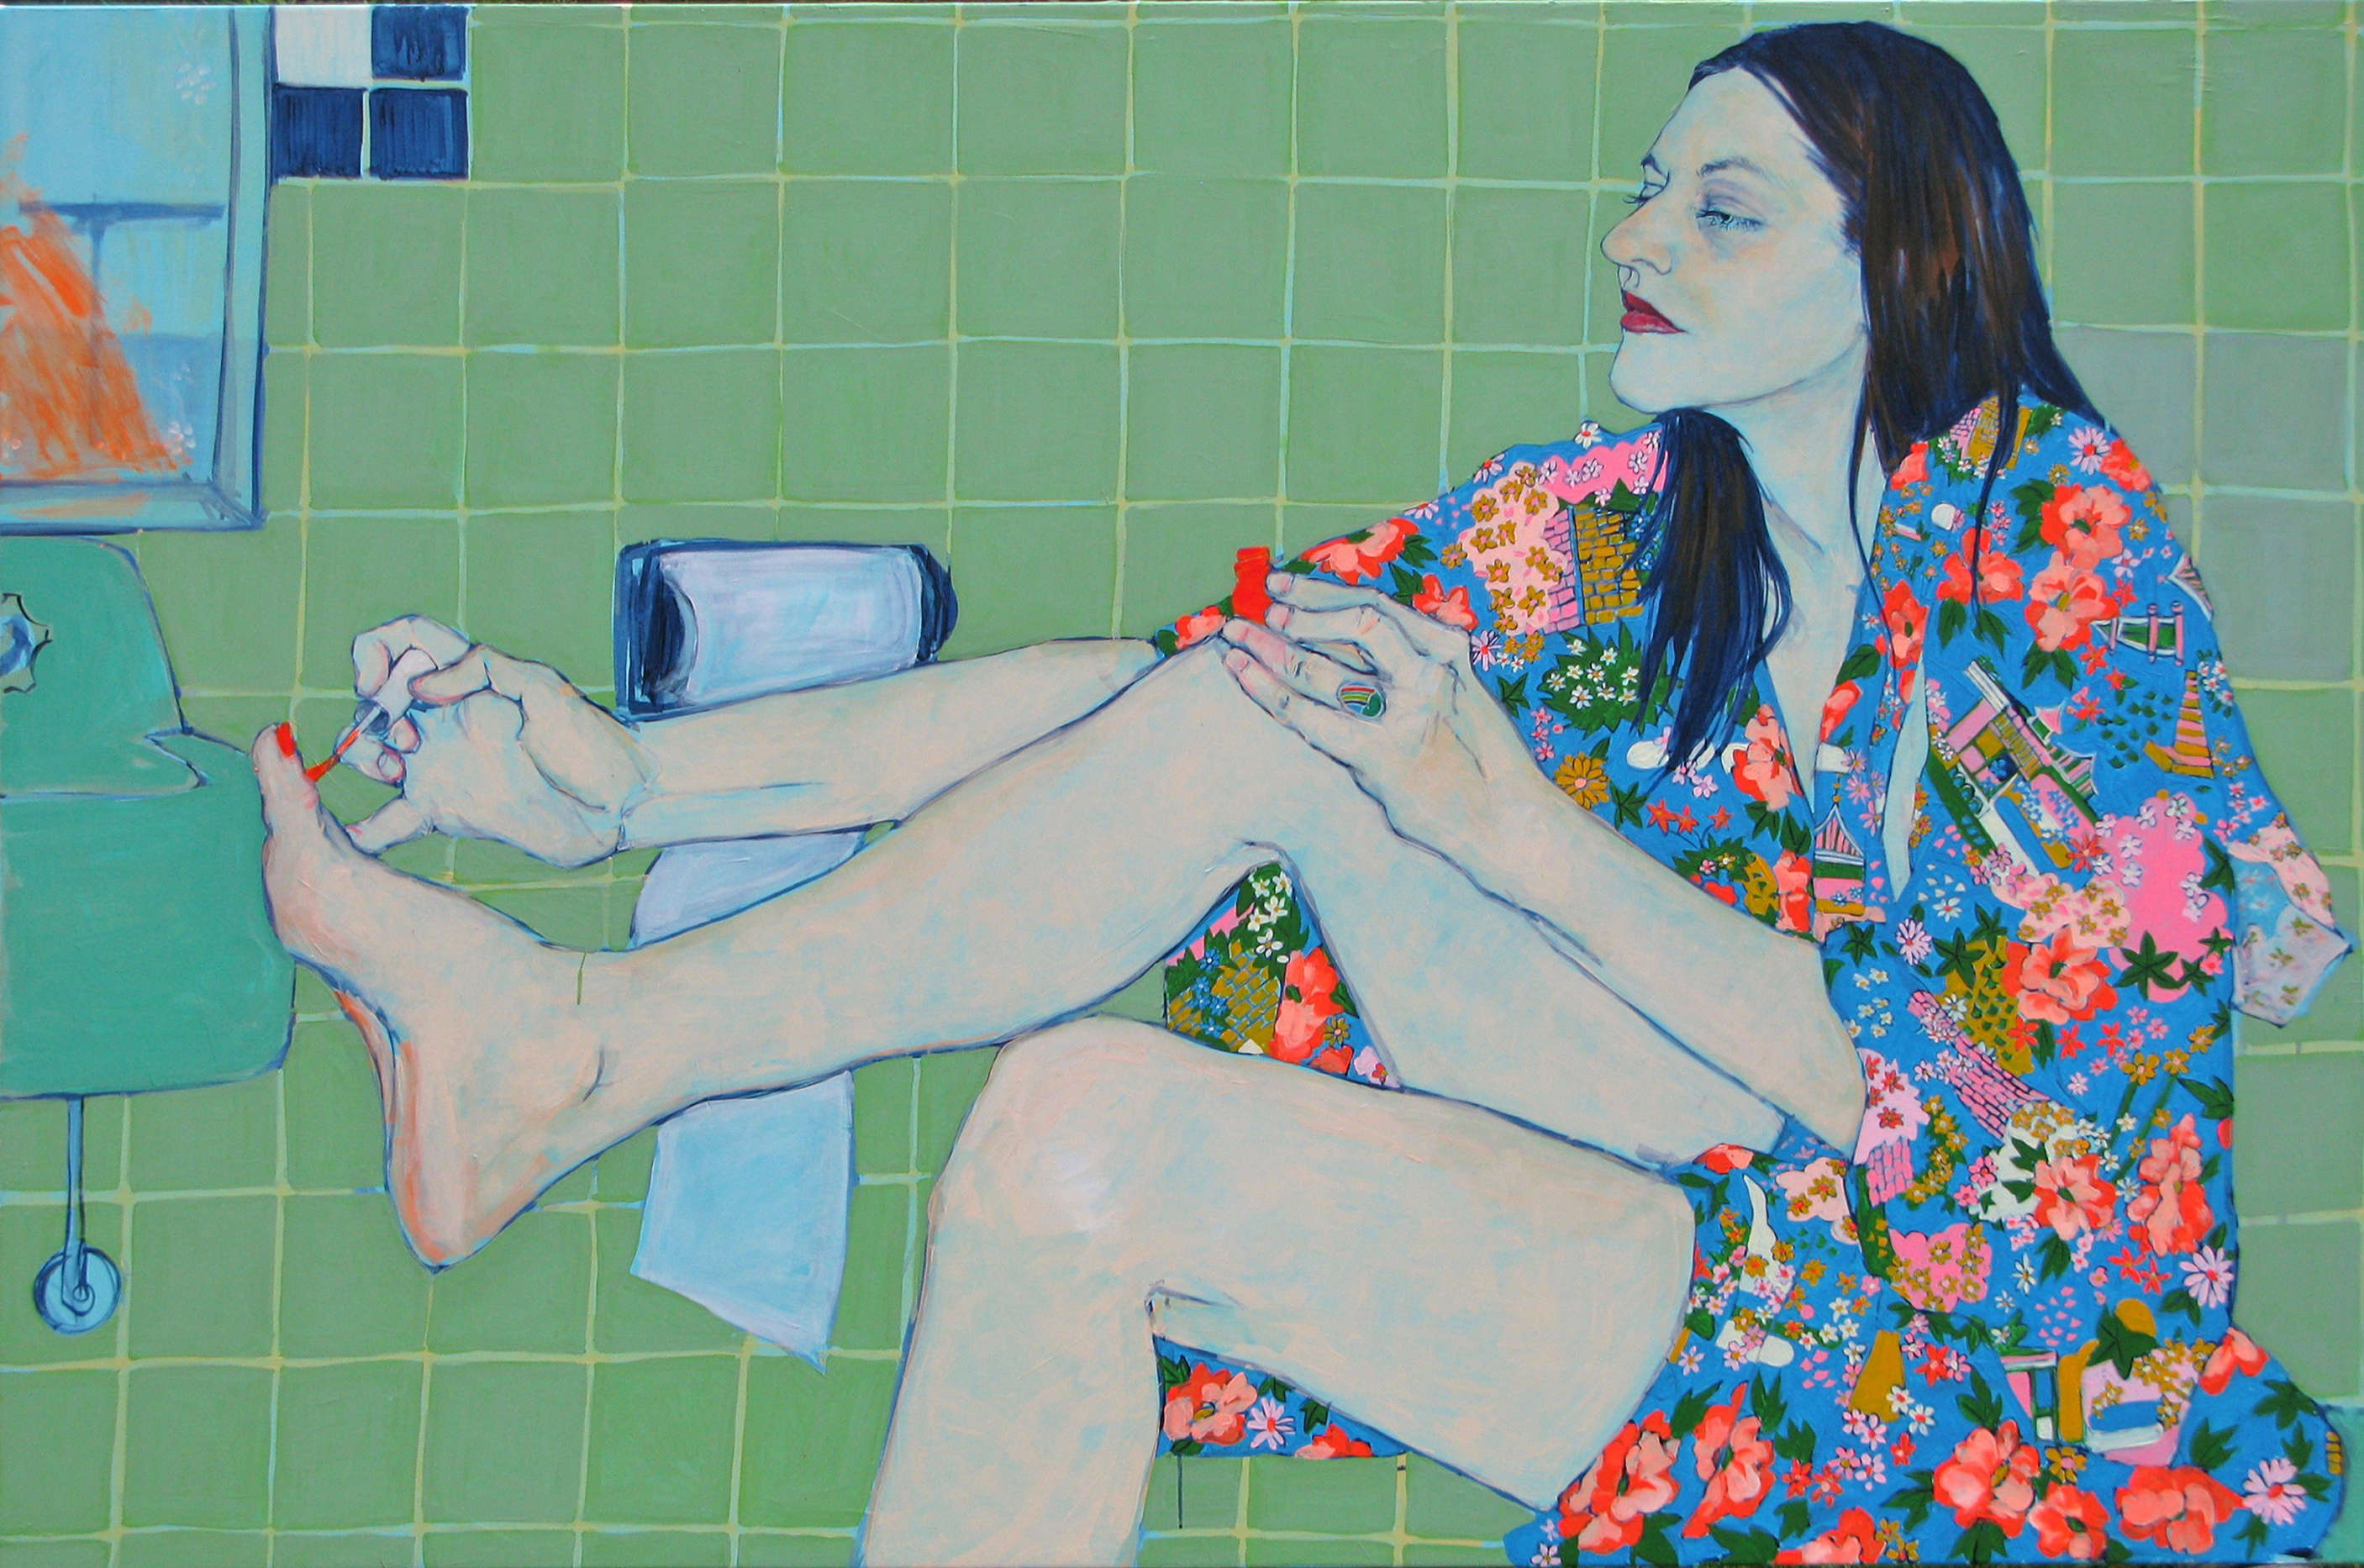 Sara Vanderbeek in Her Bath Closet - Painting by Hope Gangloff